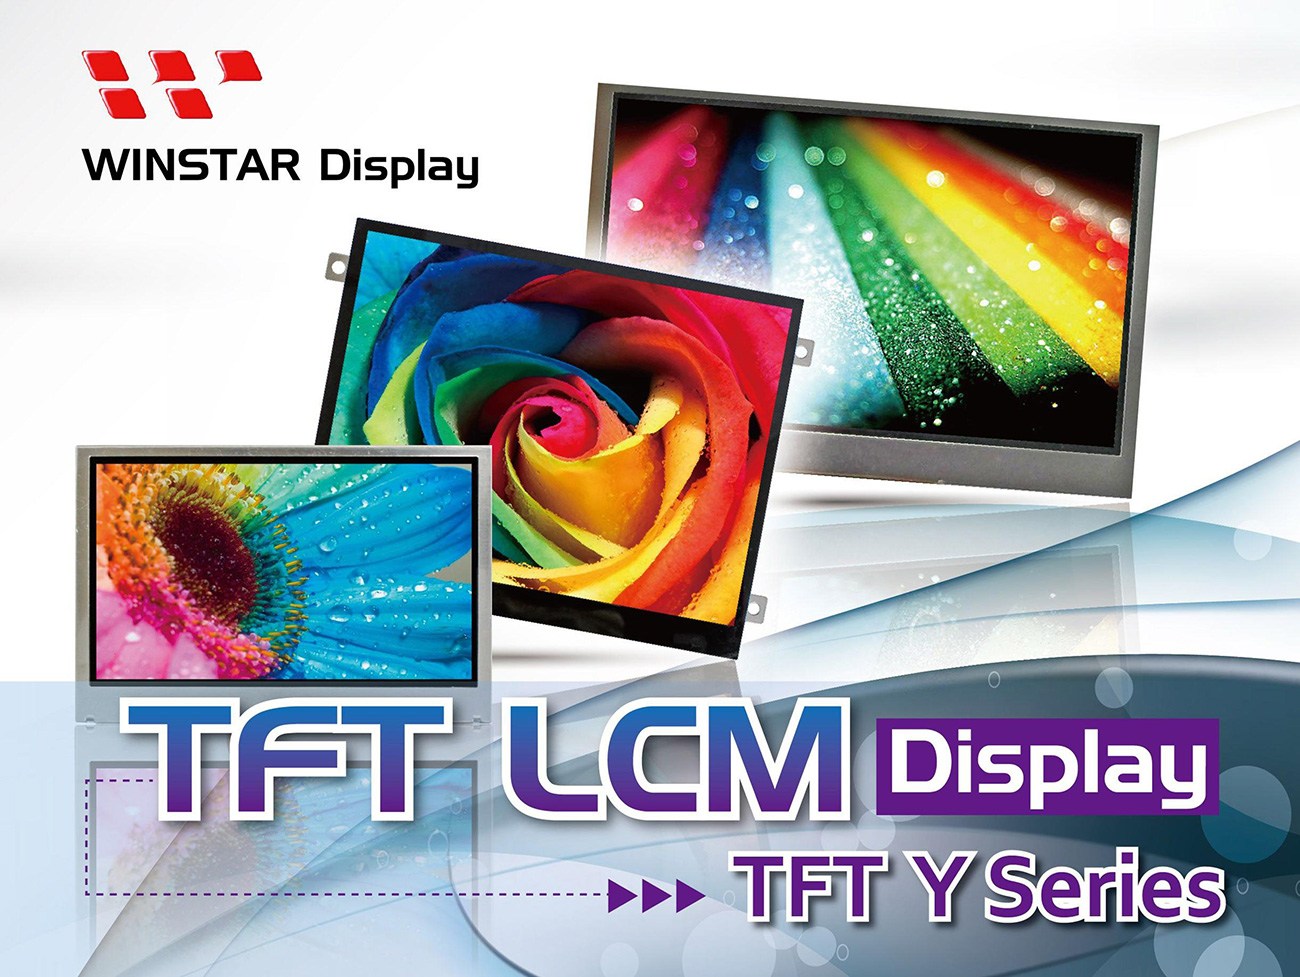 3.5 tft lcd, 3.5" tft lcd, tft lcd 3.5, tft lcd 3.5", 3.5 tft display, tft display 3.5, 4.3 tft lcd, 4.3 tft lcd, 4.3" tft lcd, tft lcd 4.3, tft lcd 4.3", 4.3 tft display, tft display 4.3, 5.7 tft lcd, 5.7" tft lcd, tft lcd 5.7, tft lcd 5.7", 5.7 tft display, tft display 5.7, 7 tft lcd, 7" tft lcd, tft lcd 7, tft lcd 7", 7 tft display, tft display 7, 7.0 tft lcd, 7.0 tft display